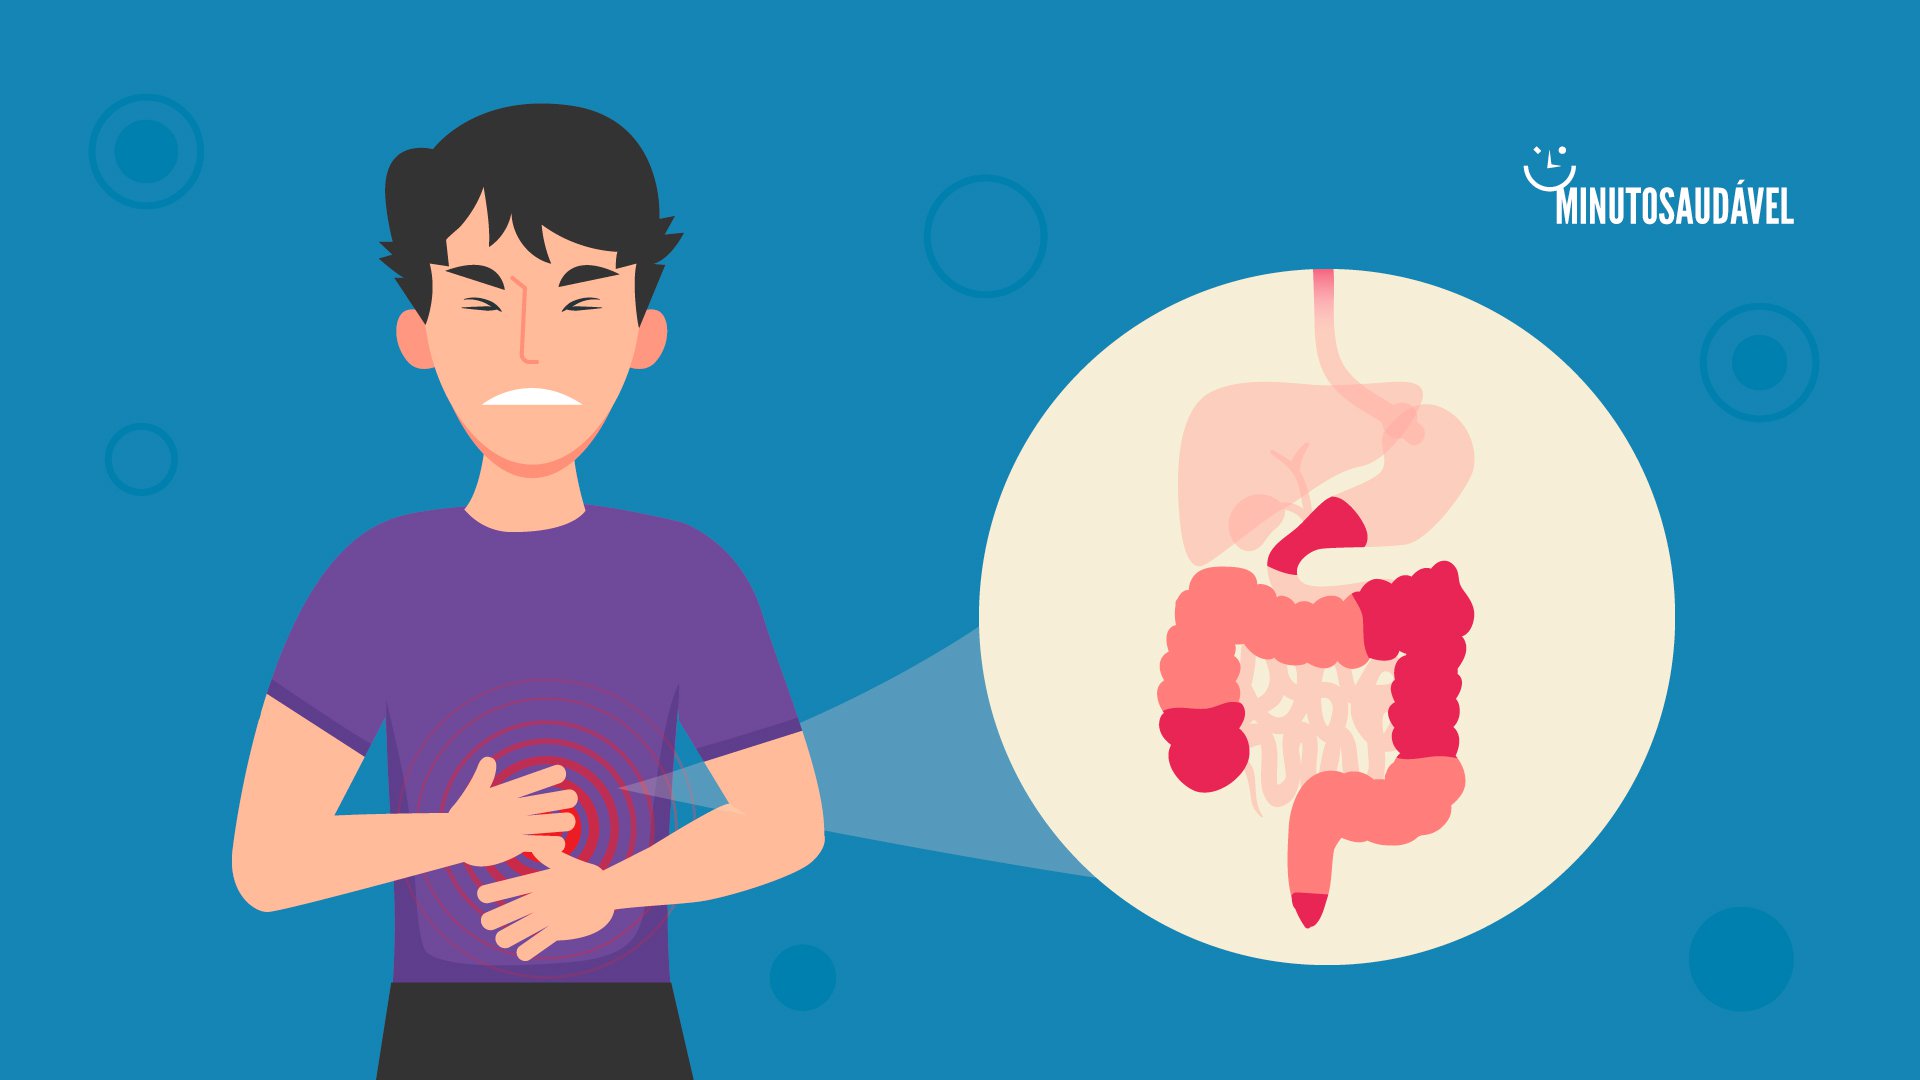 Foto de capa do artigo "Doença de Crohn: o que é, sintomas, alimentação, tem cura?"